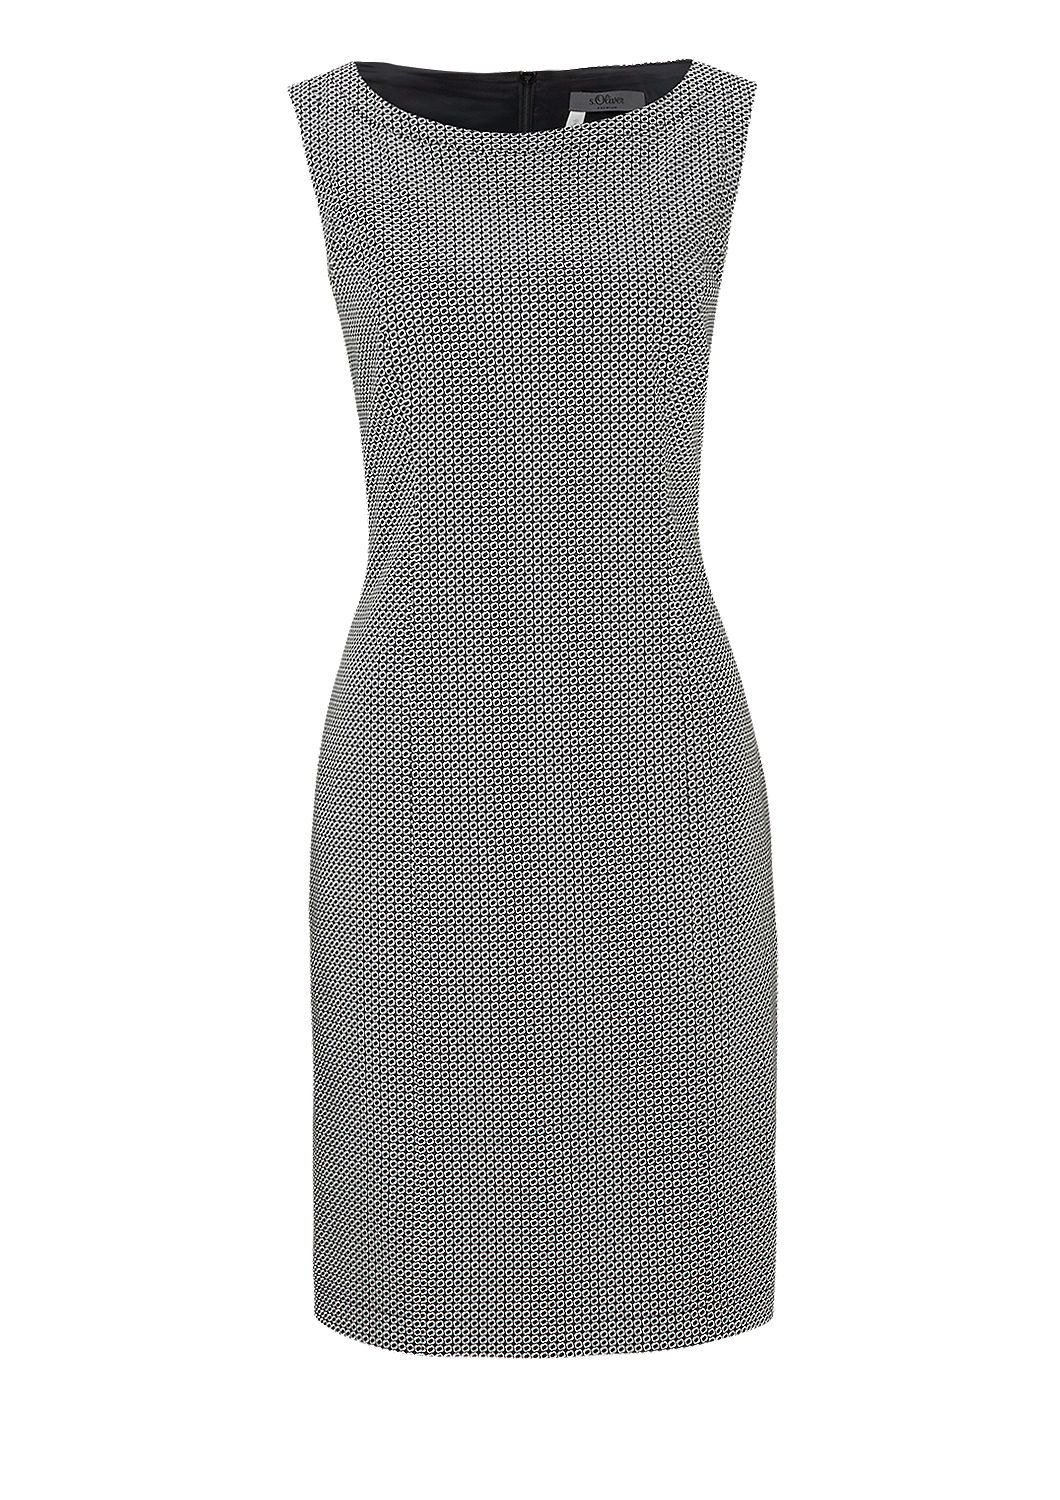 Kleid Aus Baumwollsatin Kaufen | S.oliver Shop 130€